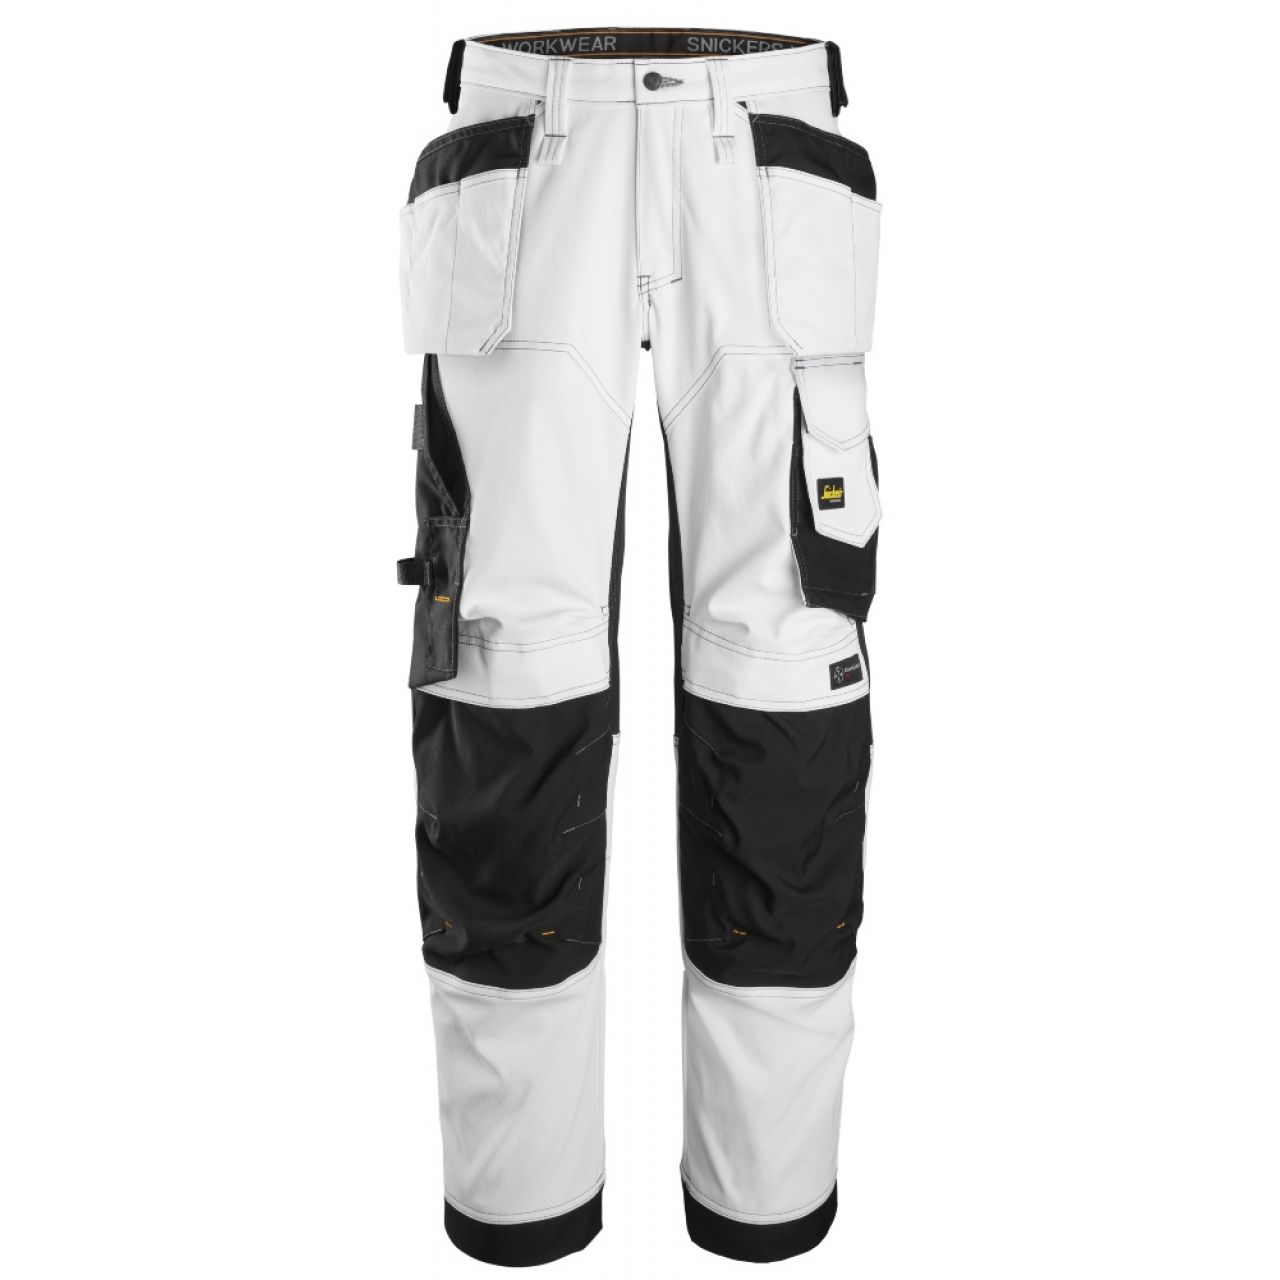 6251 Pantalones largos de trabajo elásticos de ajuste holgado con bolsillos flotantes AllroundWork blanco-negro talla 252